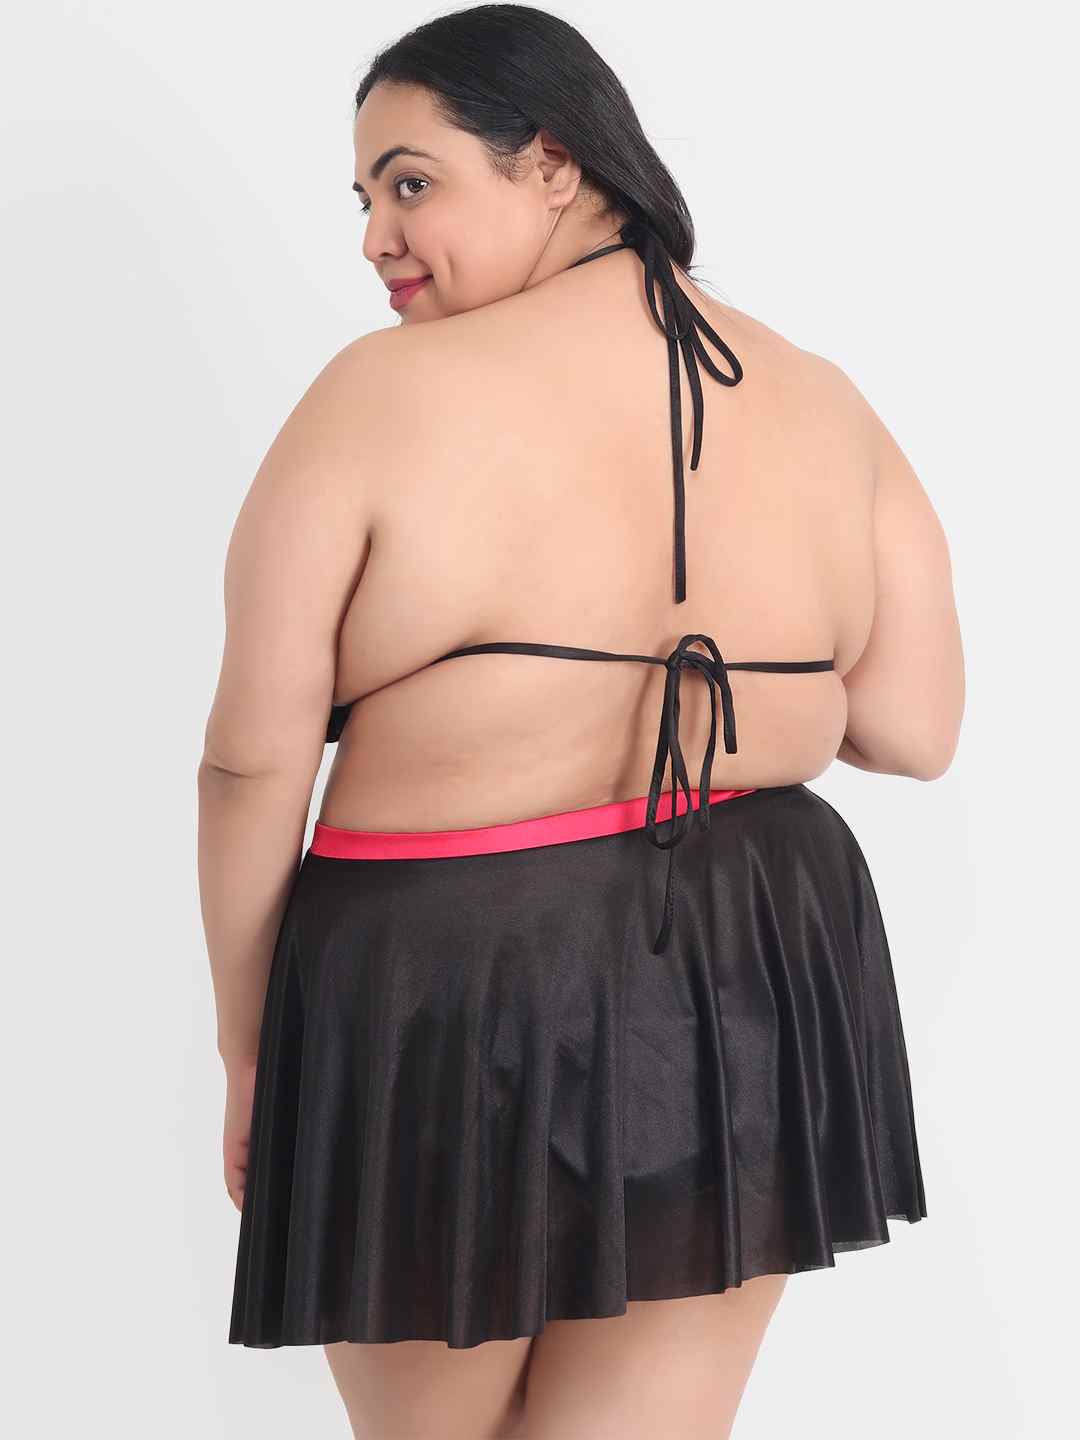 Plus Size Sexy 3 Piece Babydoll Bikini Dress for Honeymoon 203K